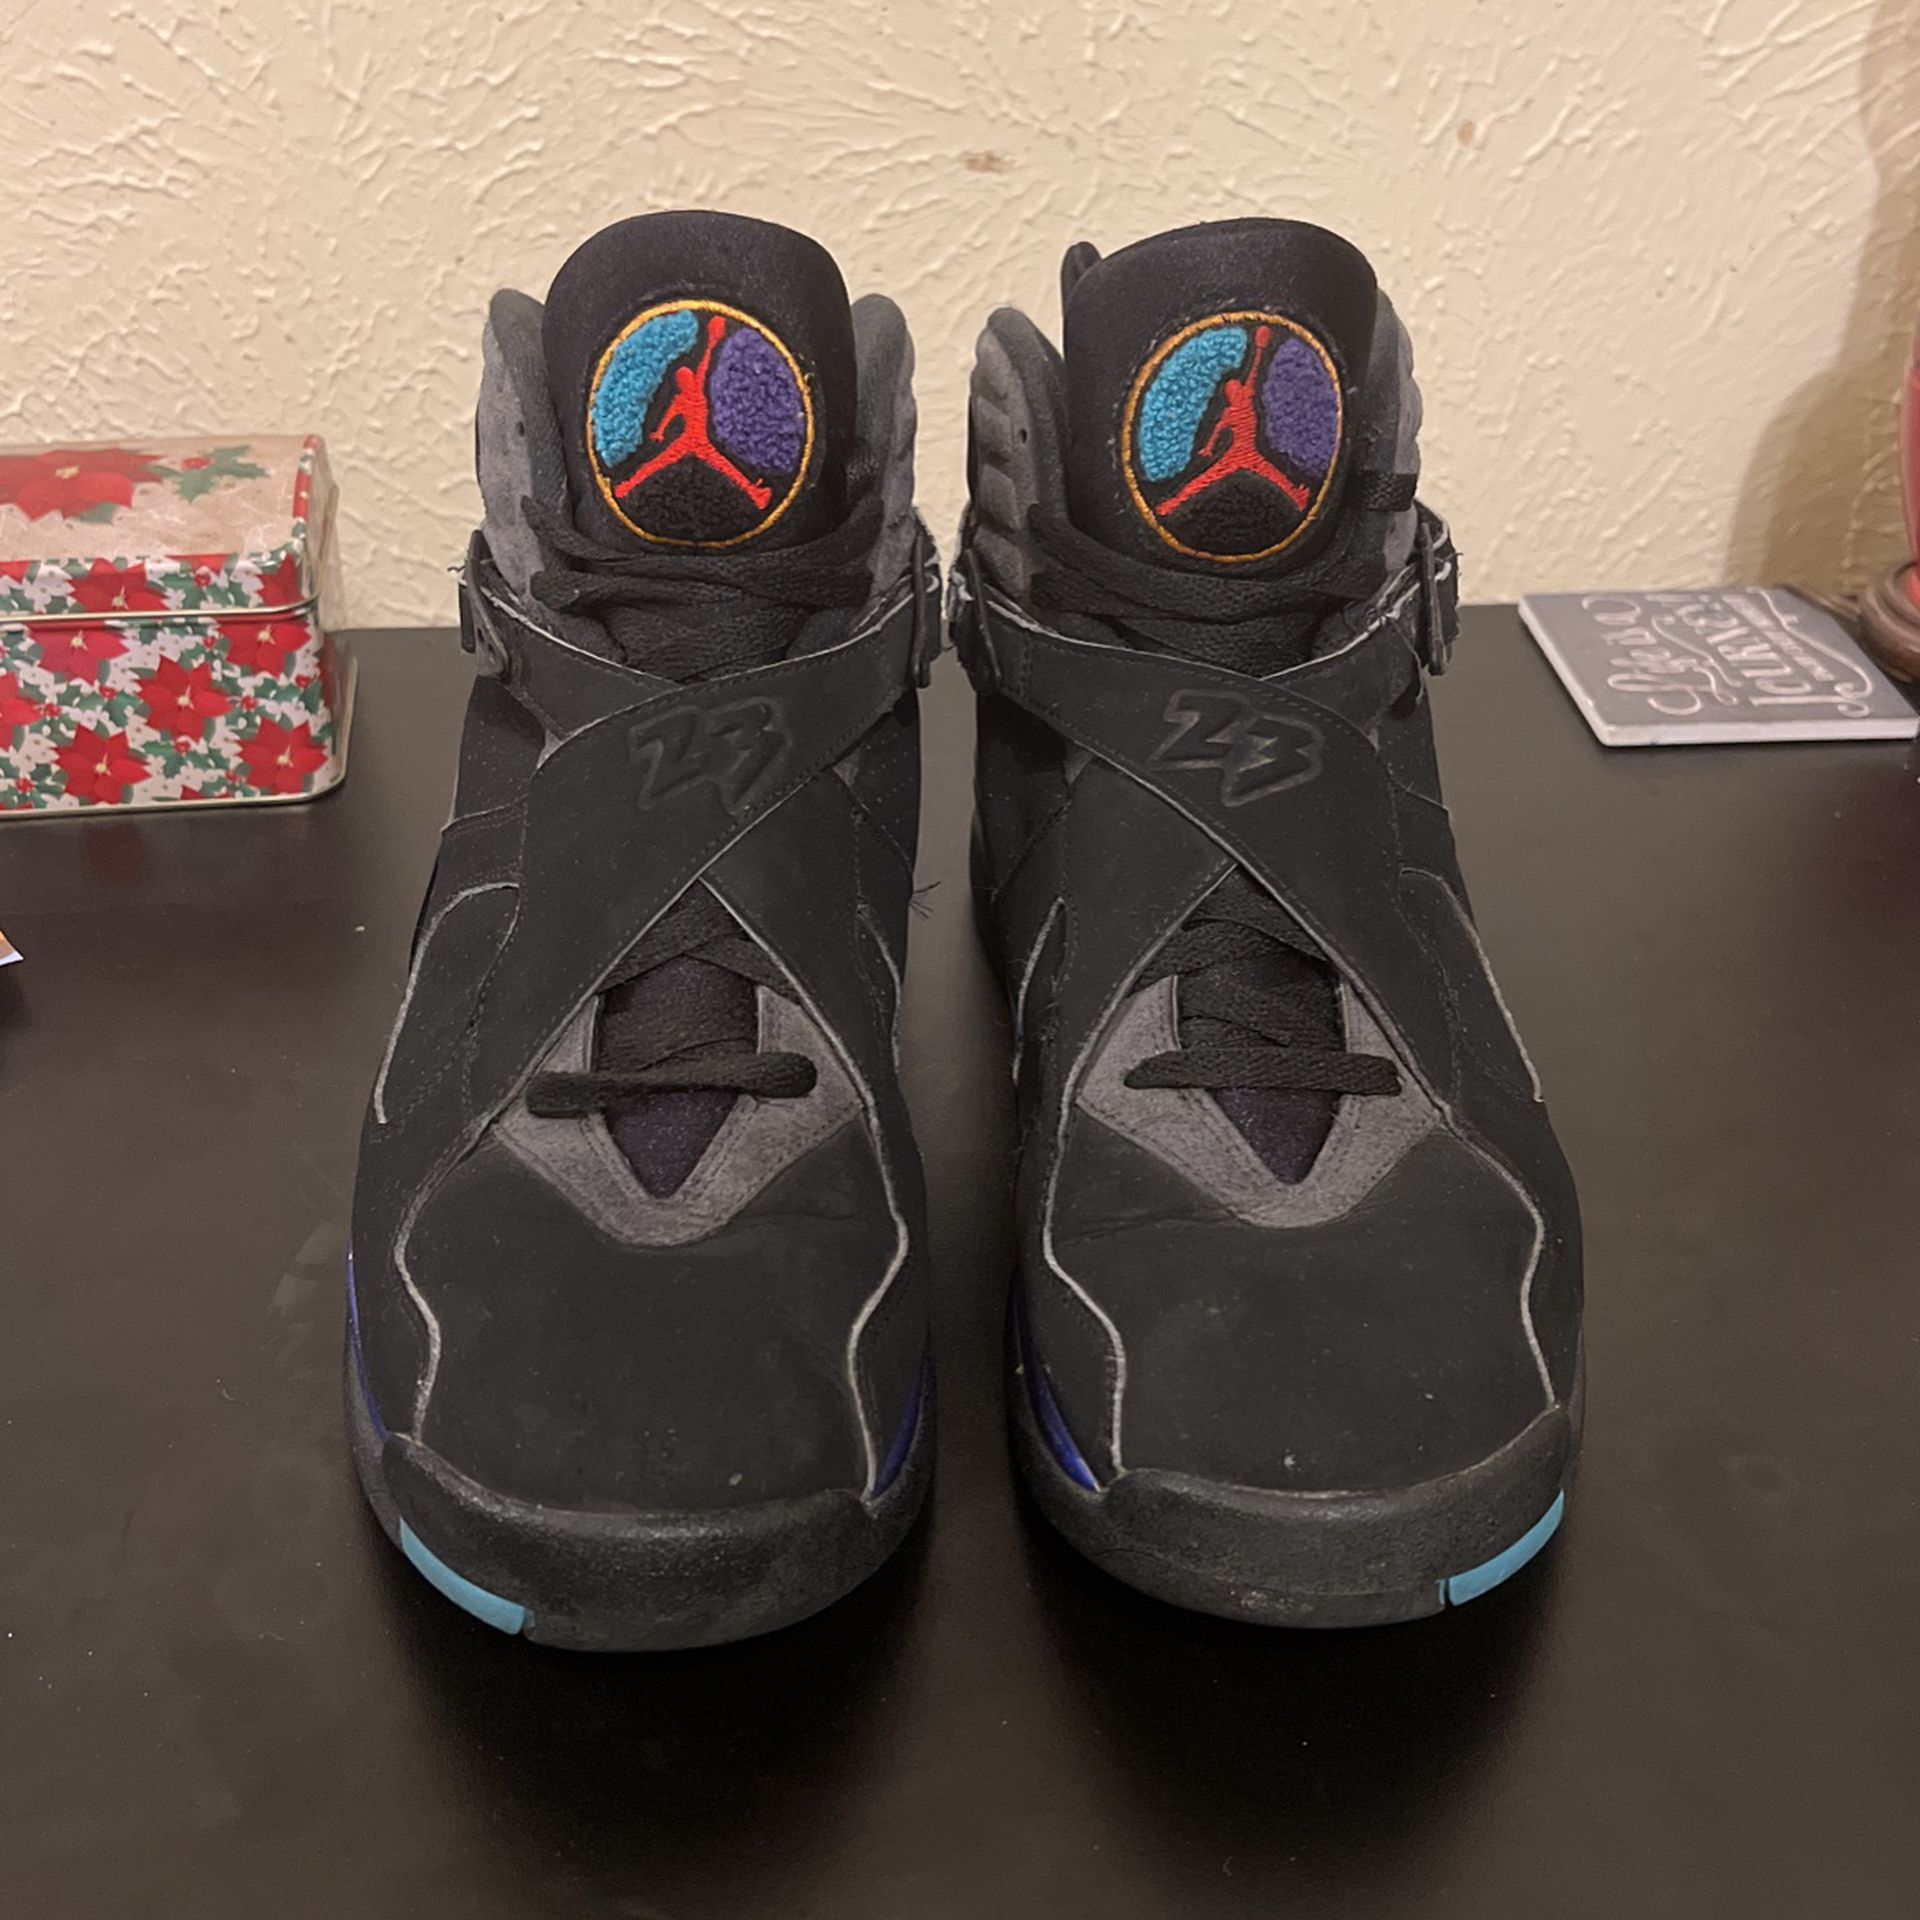 Size 12 - Jordan 8 Retro Aqua 2015